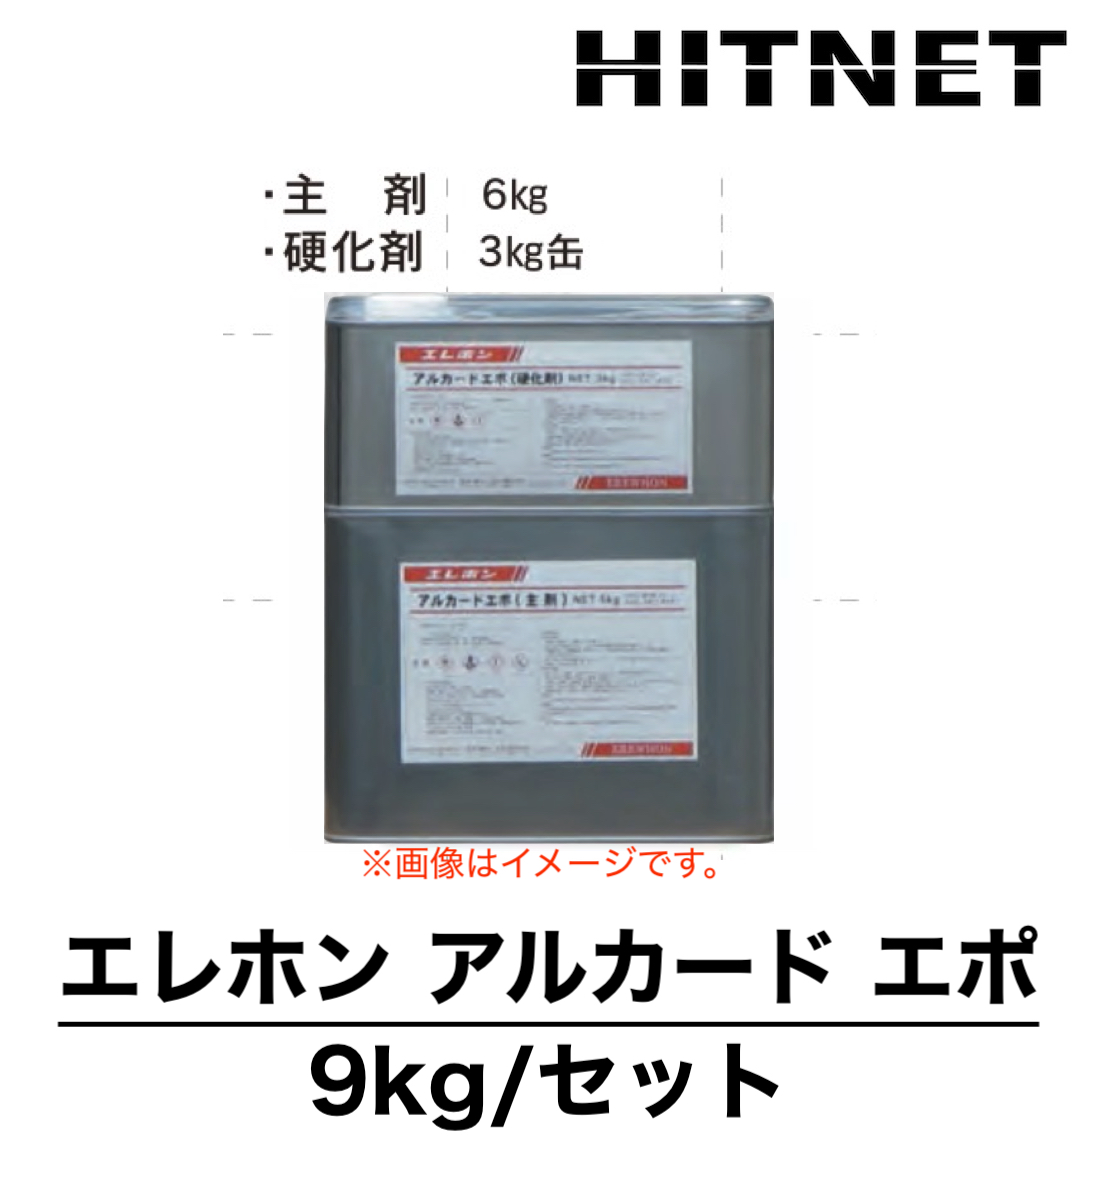 エレホン アルカードエポ 9kg/セット 下地強化剤 : hitnet-1011